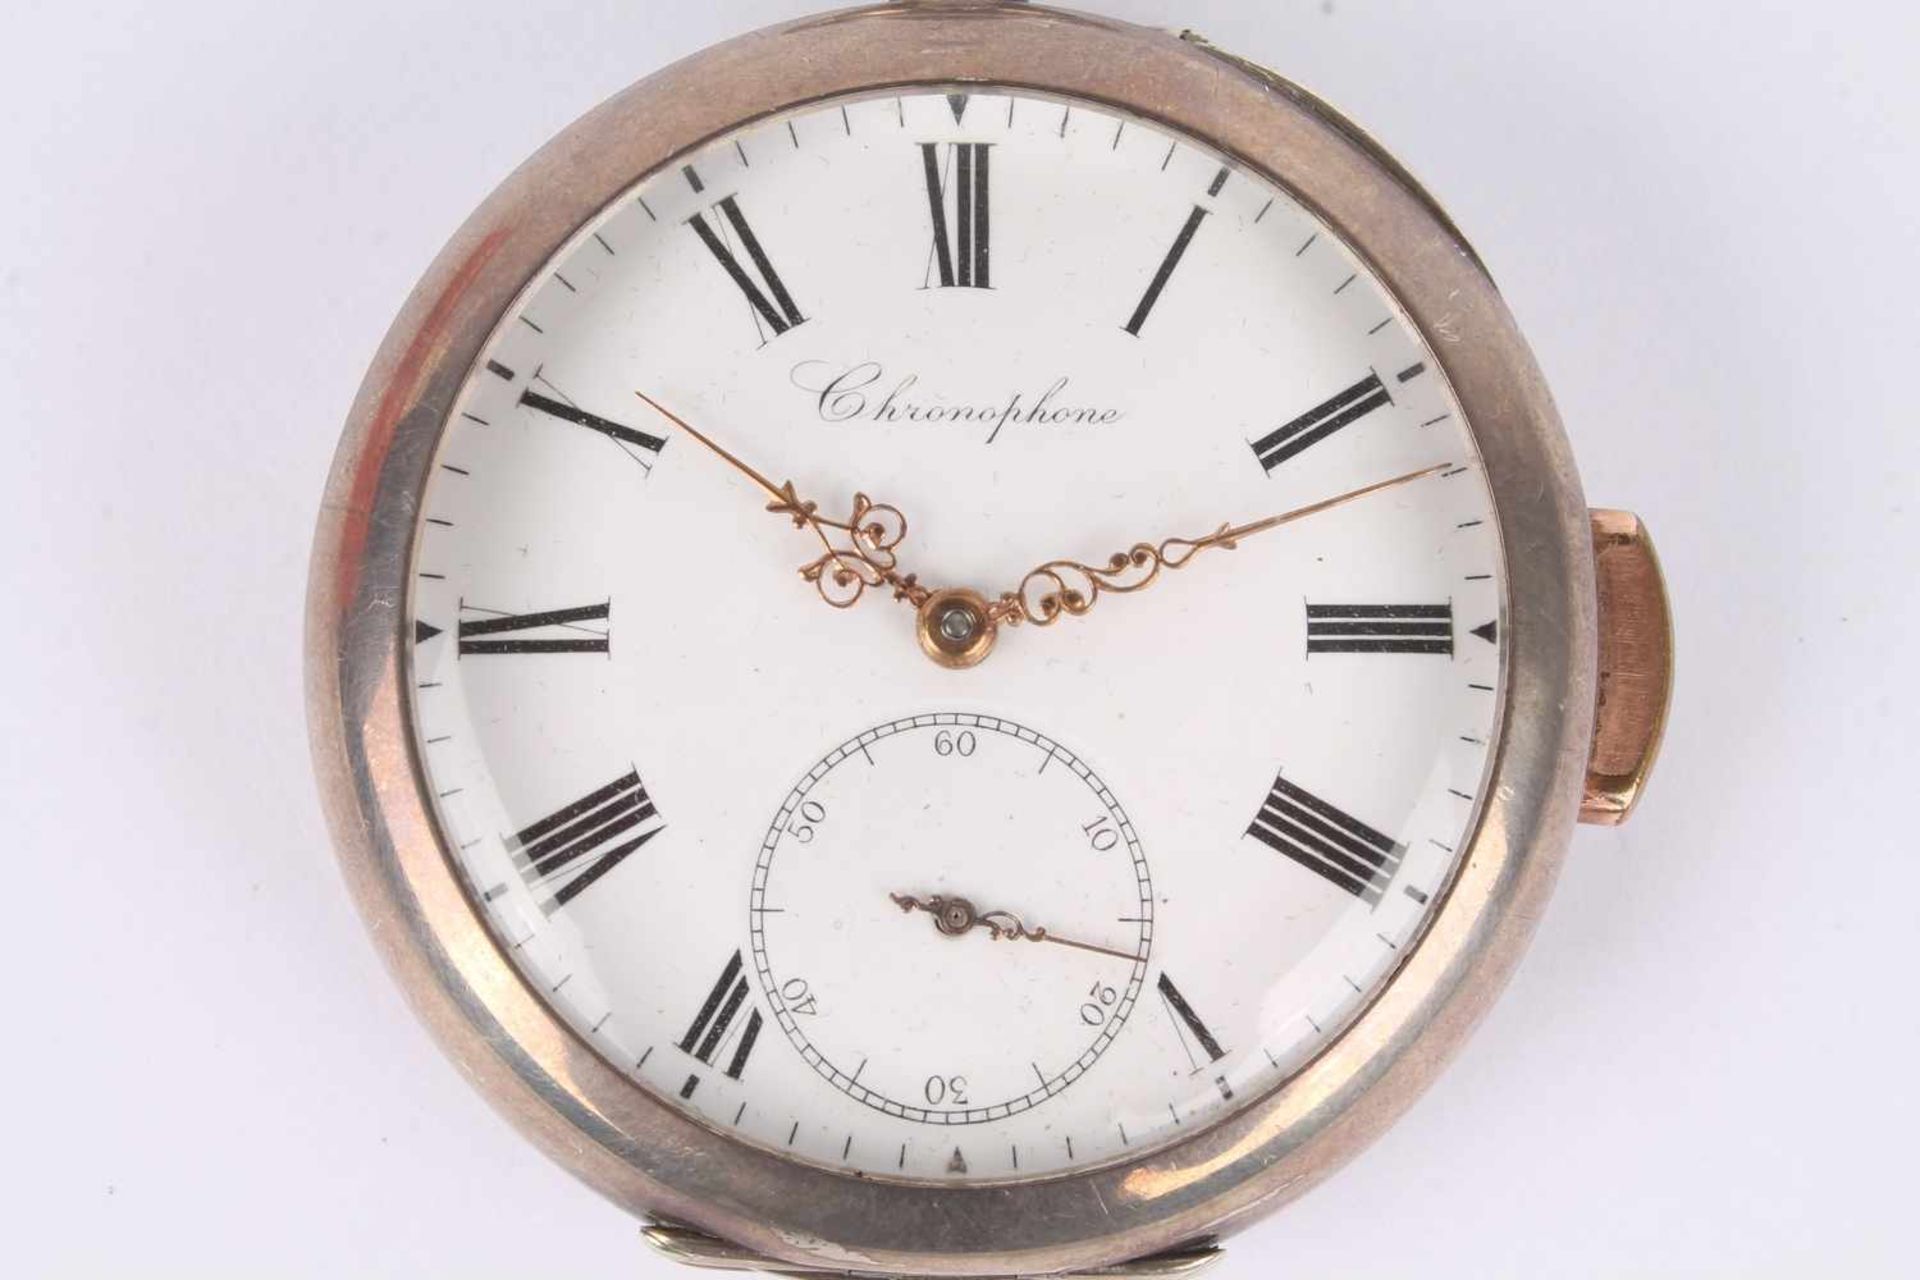 Repetier Taschenuhr um 1900, Silber, Chronophone,Repeater pocket watch 800 silver ca.. 1900, - Bild 2 aus 6